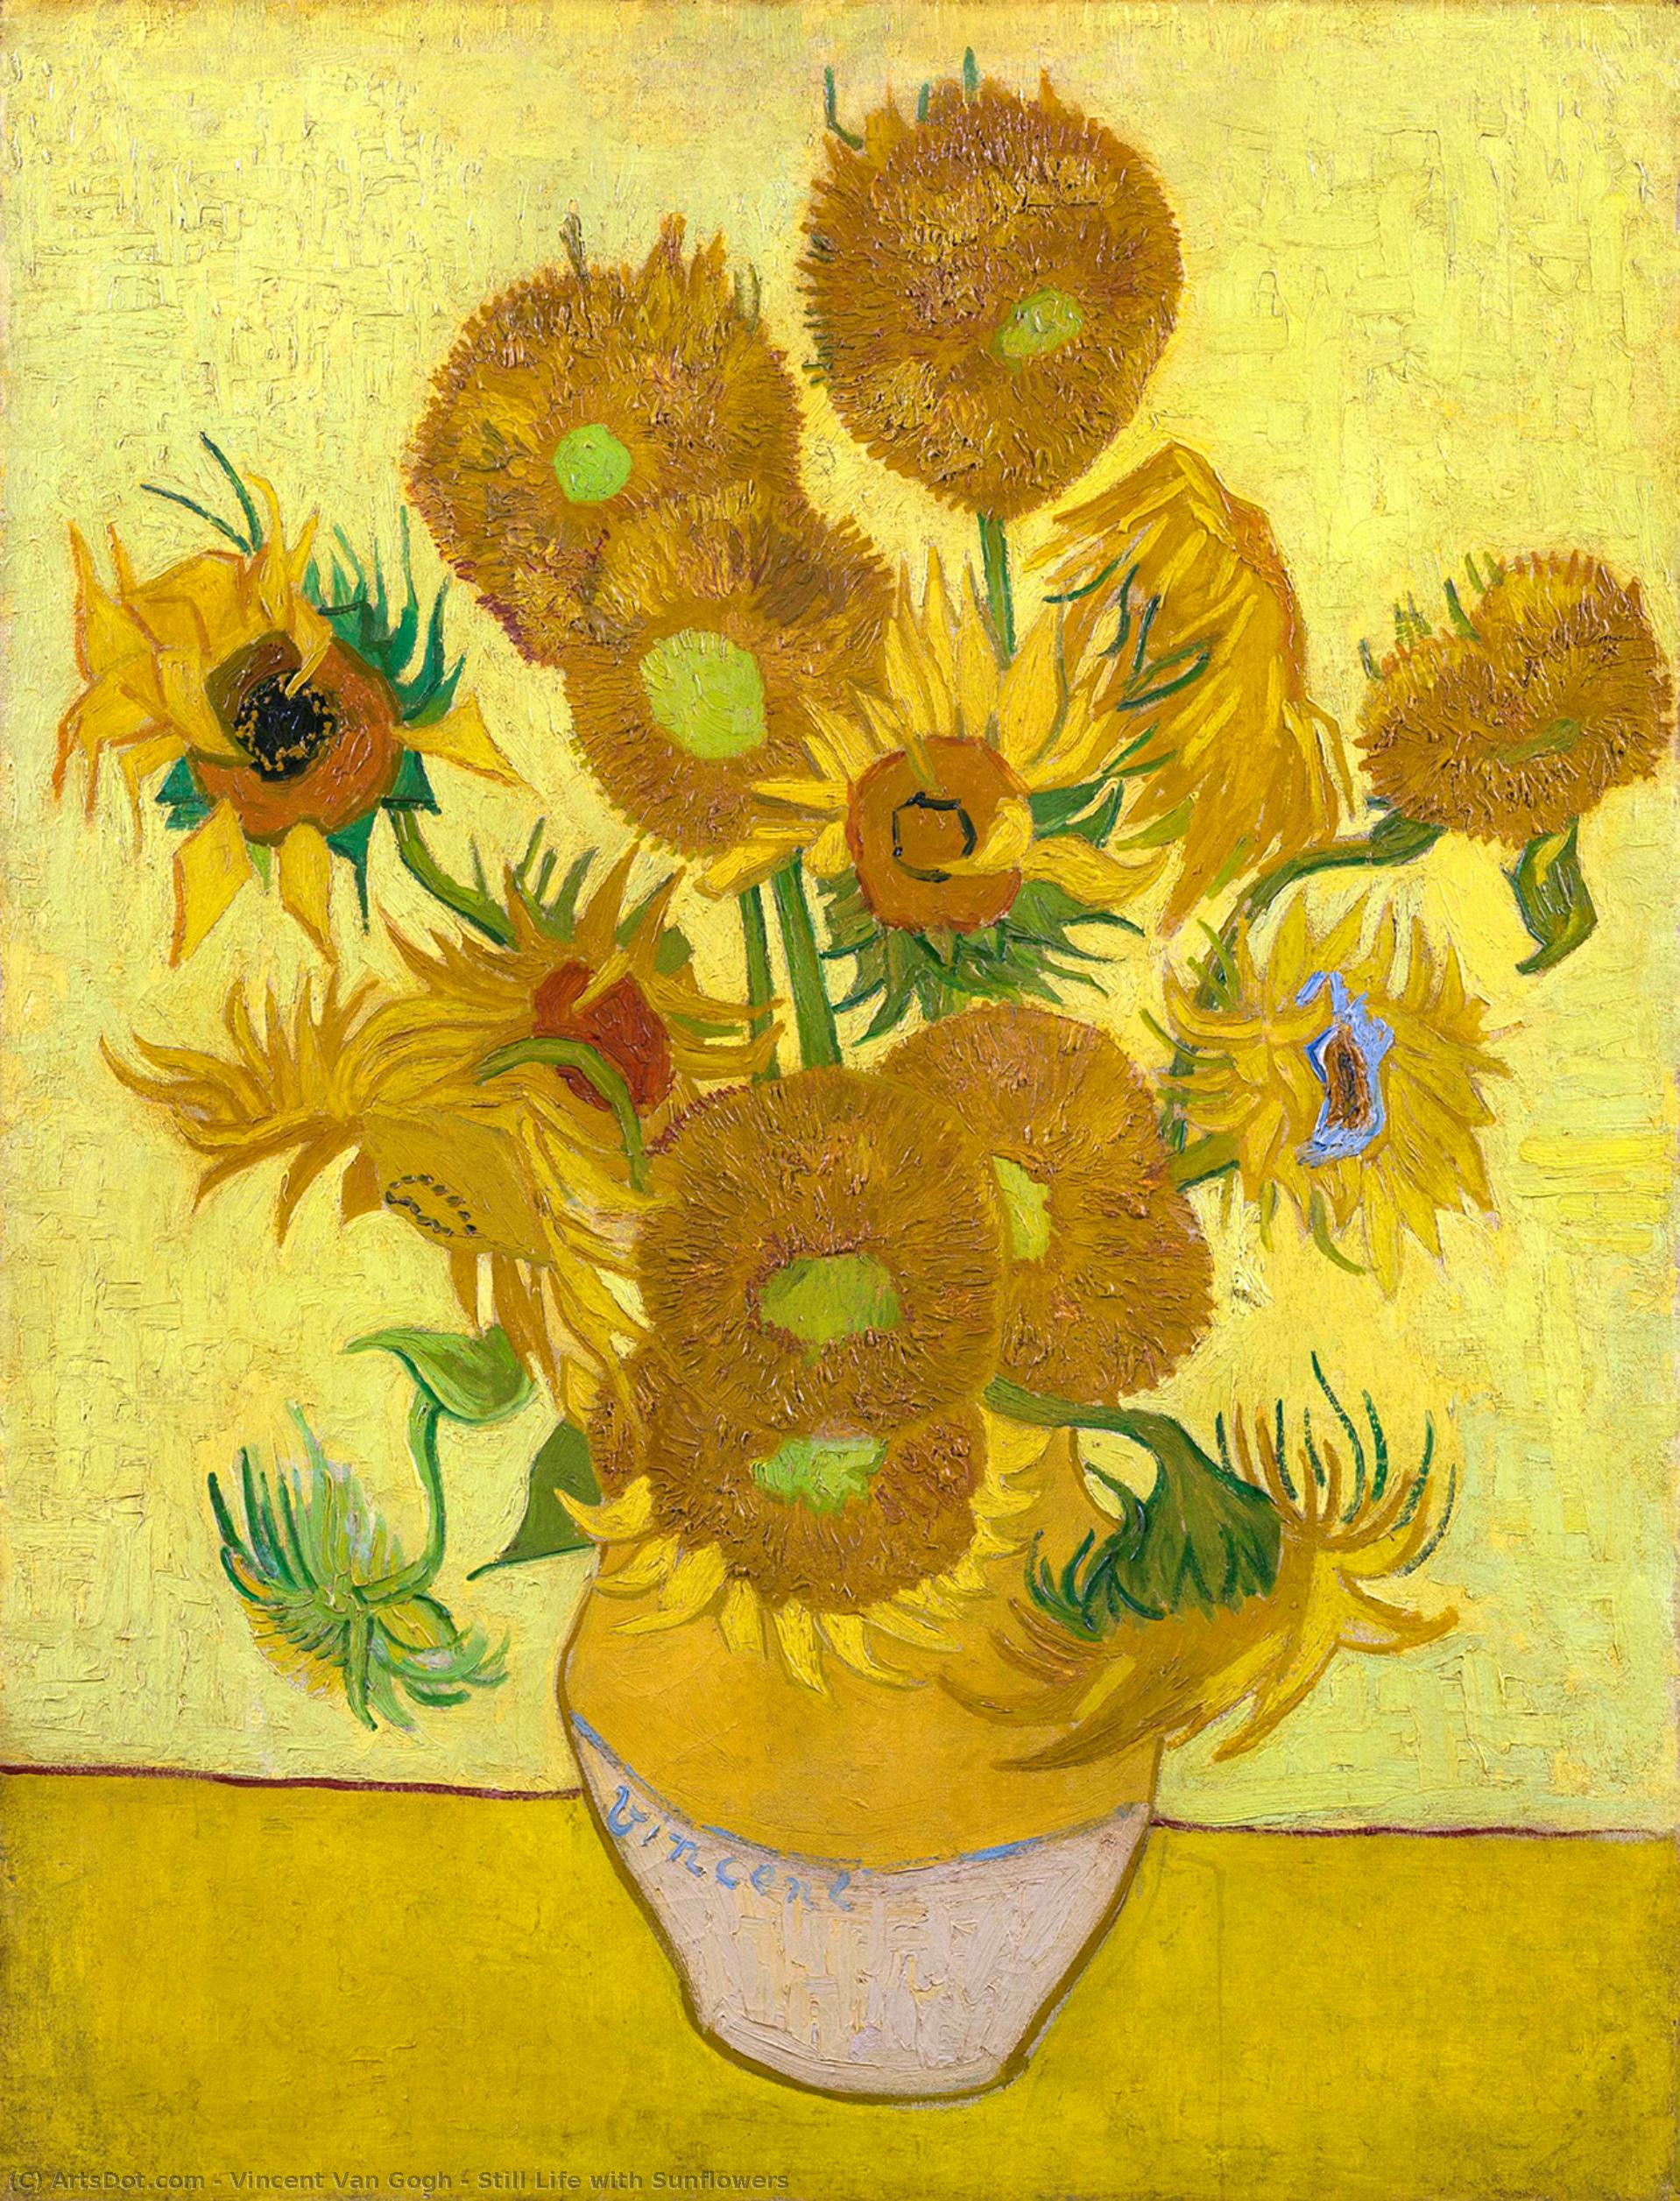 WikiOO.org - Энциклопедия изобразительного искусства - Живопись, Картины  Vincent Van Gogh - натюрморт с подсолнухами